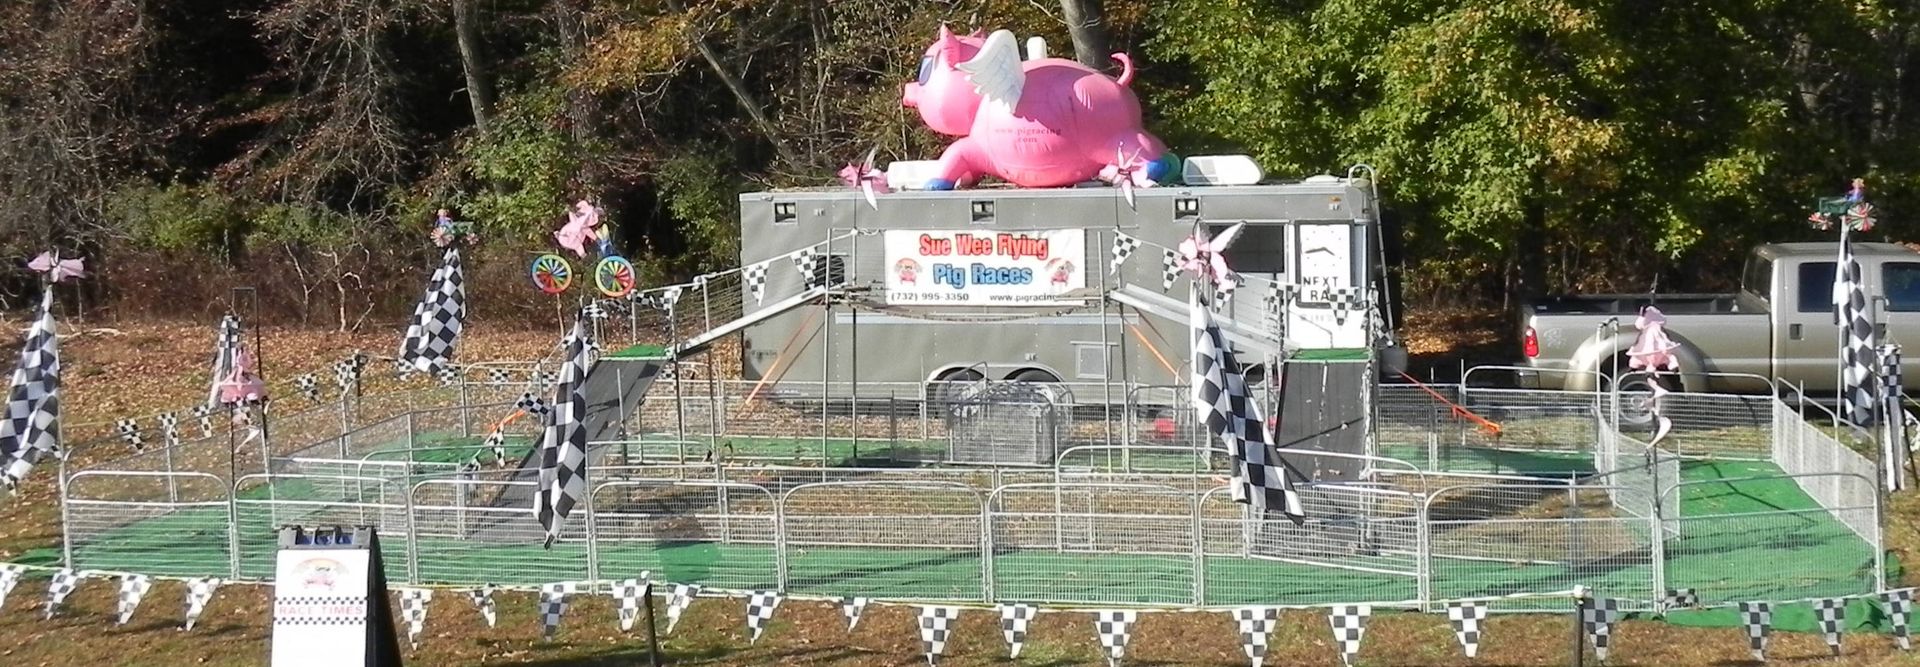 sue wee pig races